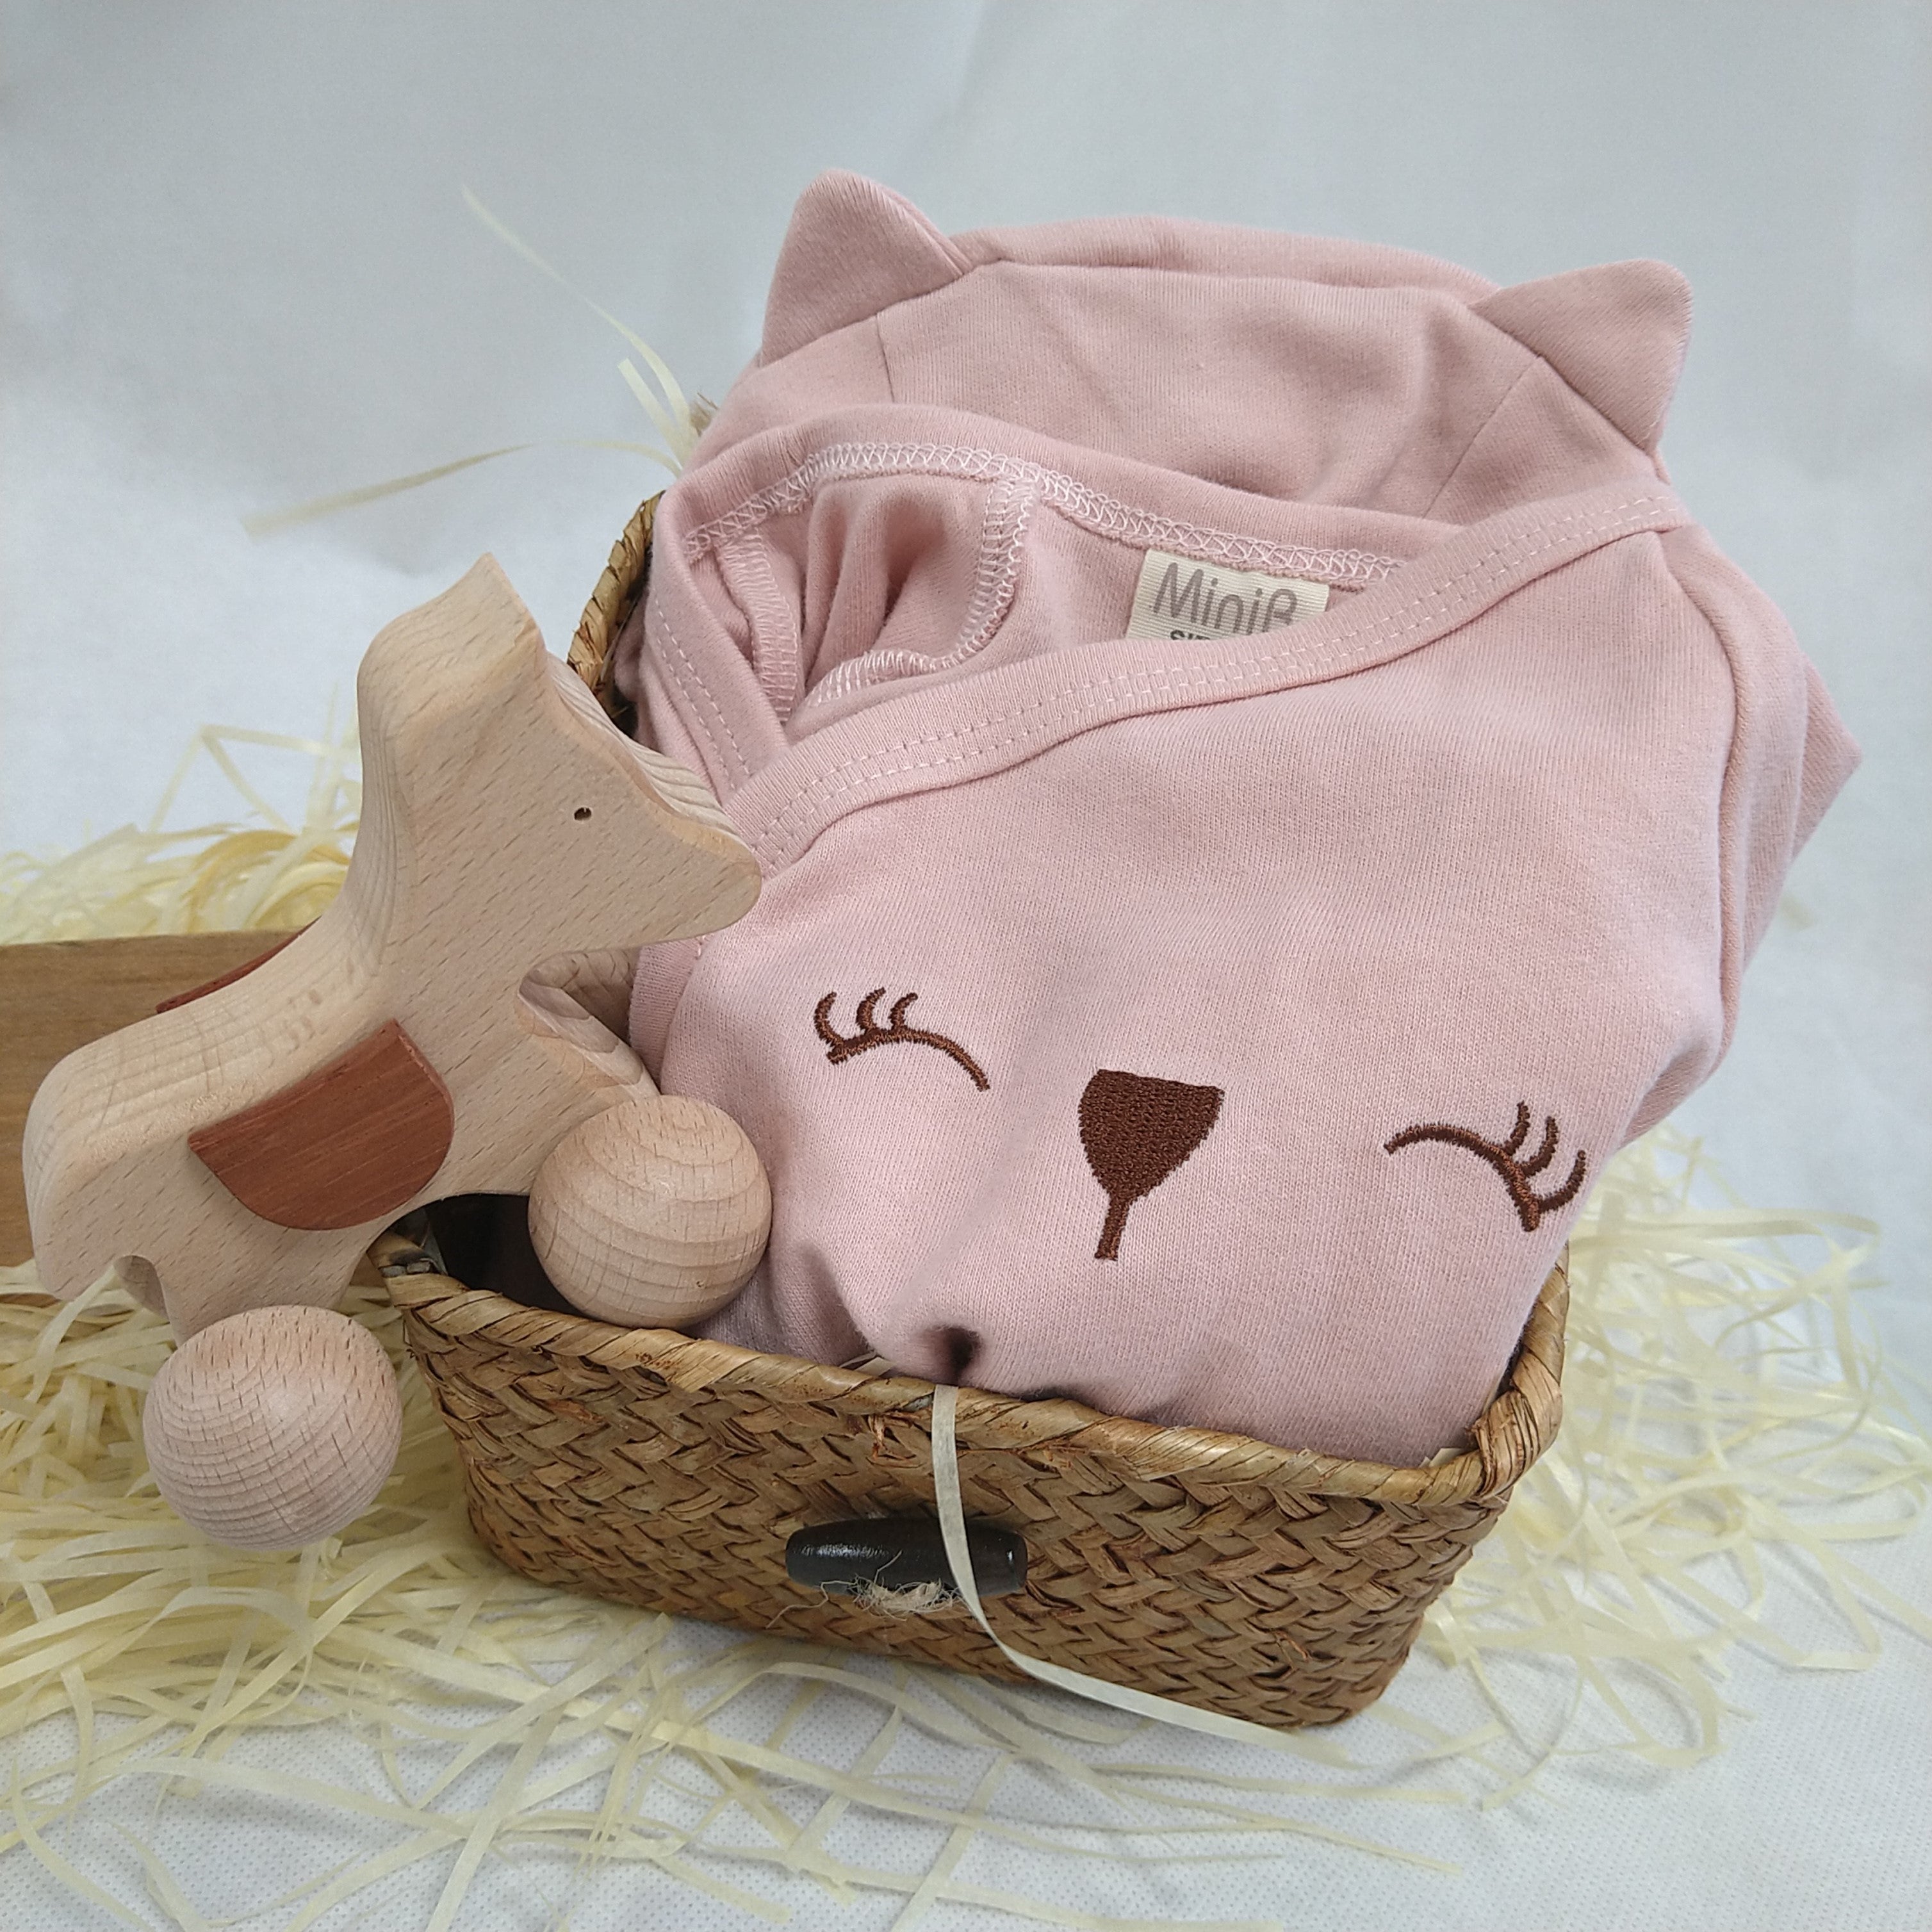 MiniB _嬰幼兒禮品籃4件裝
適合初生寶貝之派對禮物。
